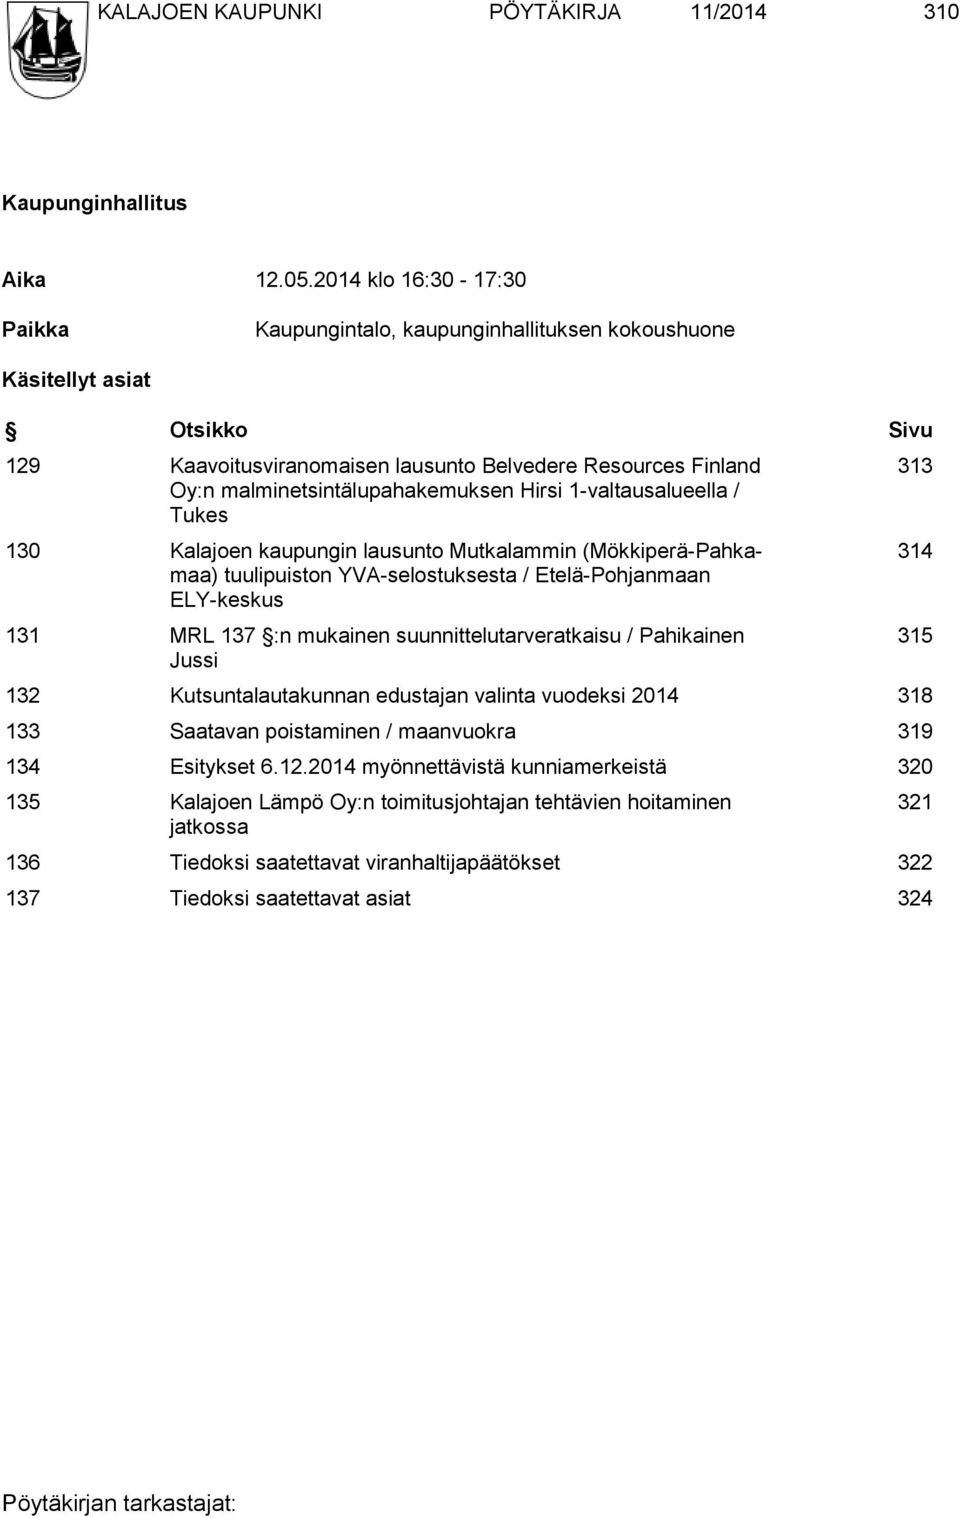 malminetsintälupahakemuksen Hirsi 1-valtausalueella / Tukes 130 Kalajoen kaupungin lausunto Mutkalammin (Mökkiperä-Pahkamaa) tuulipuiston YVA-selostuksesta / Etelä-Pohjanmaan ELY-keskus 131 MRL 137